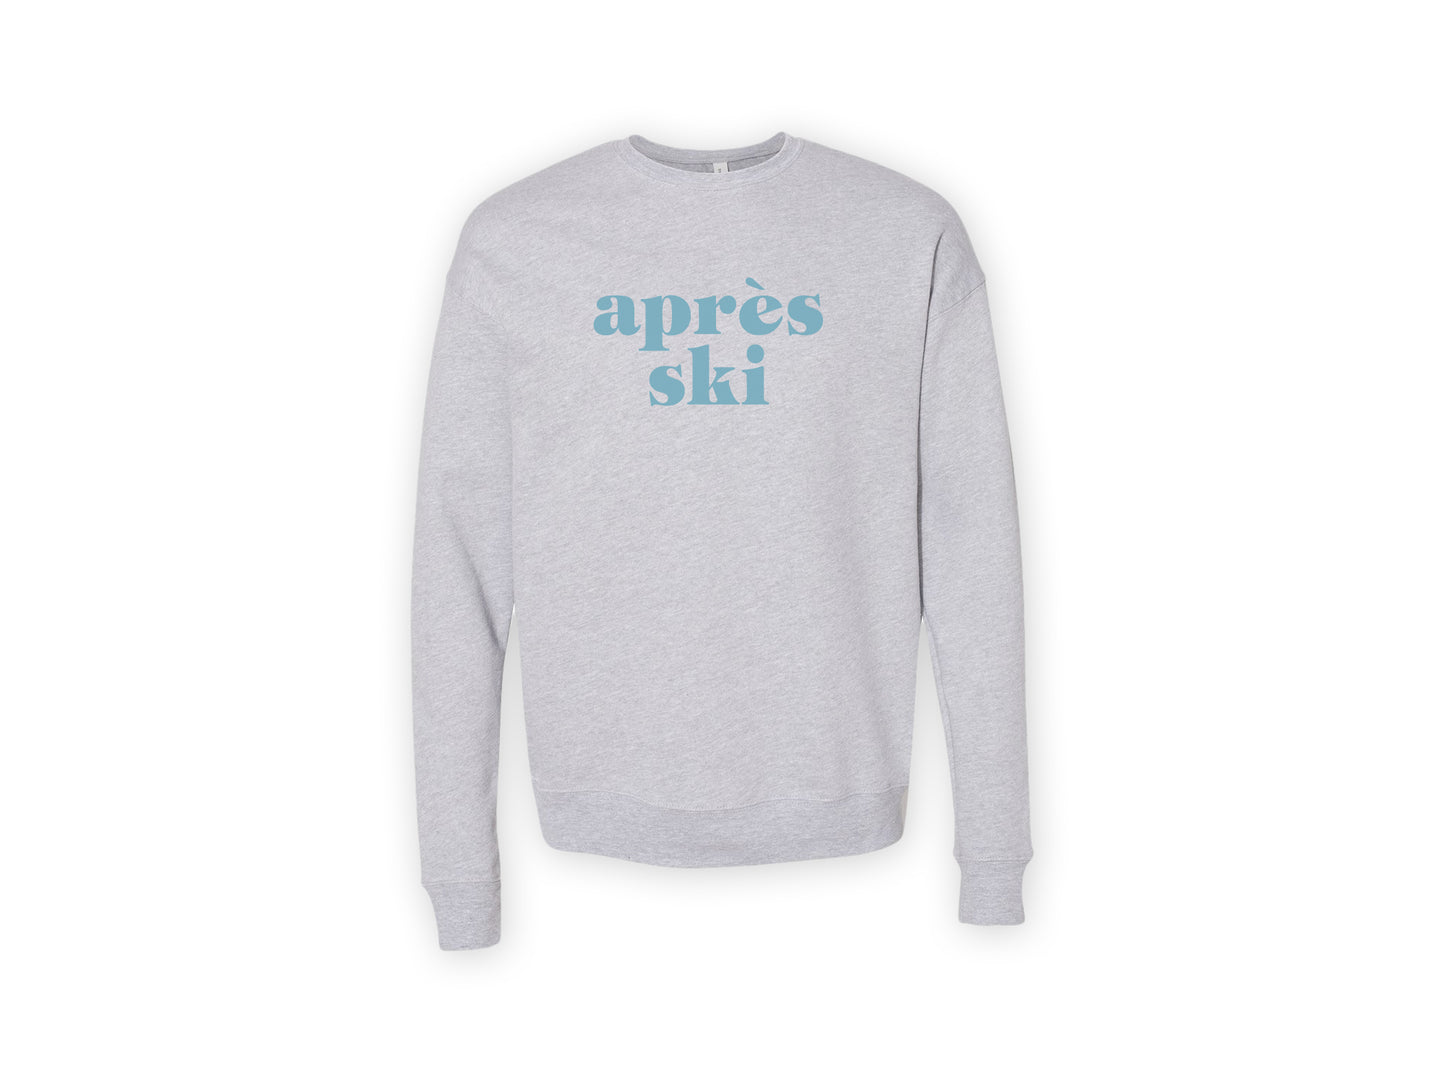 Bella Canvas 3945 Athletic Heather Soft Crewneck Sweatshirt Vintage Apres Ski top